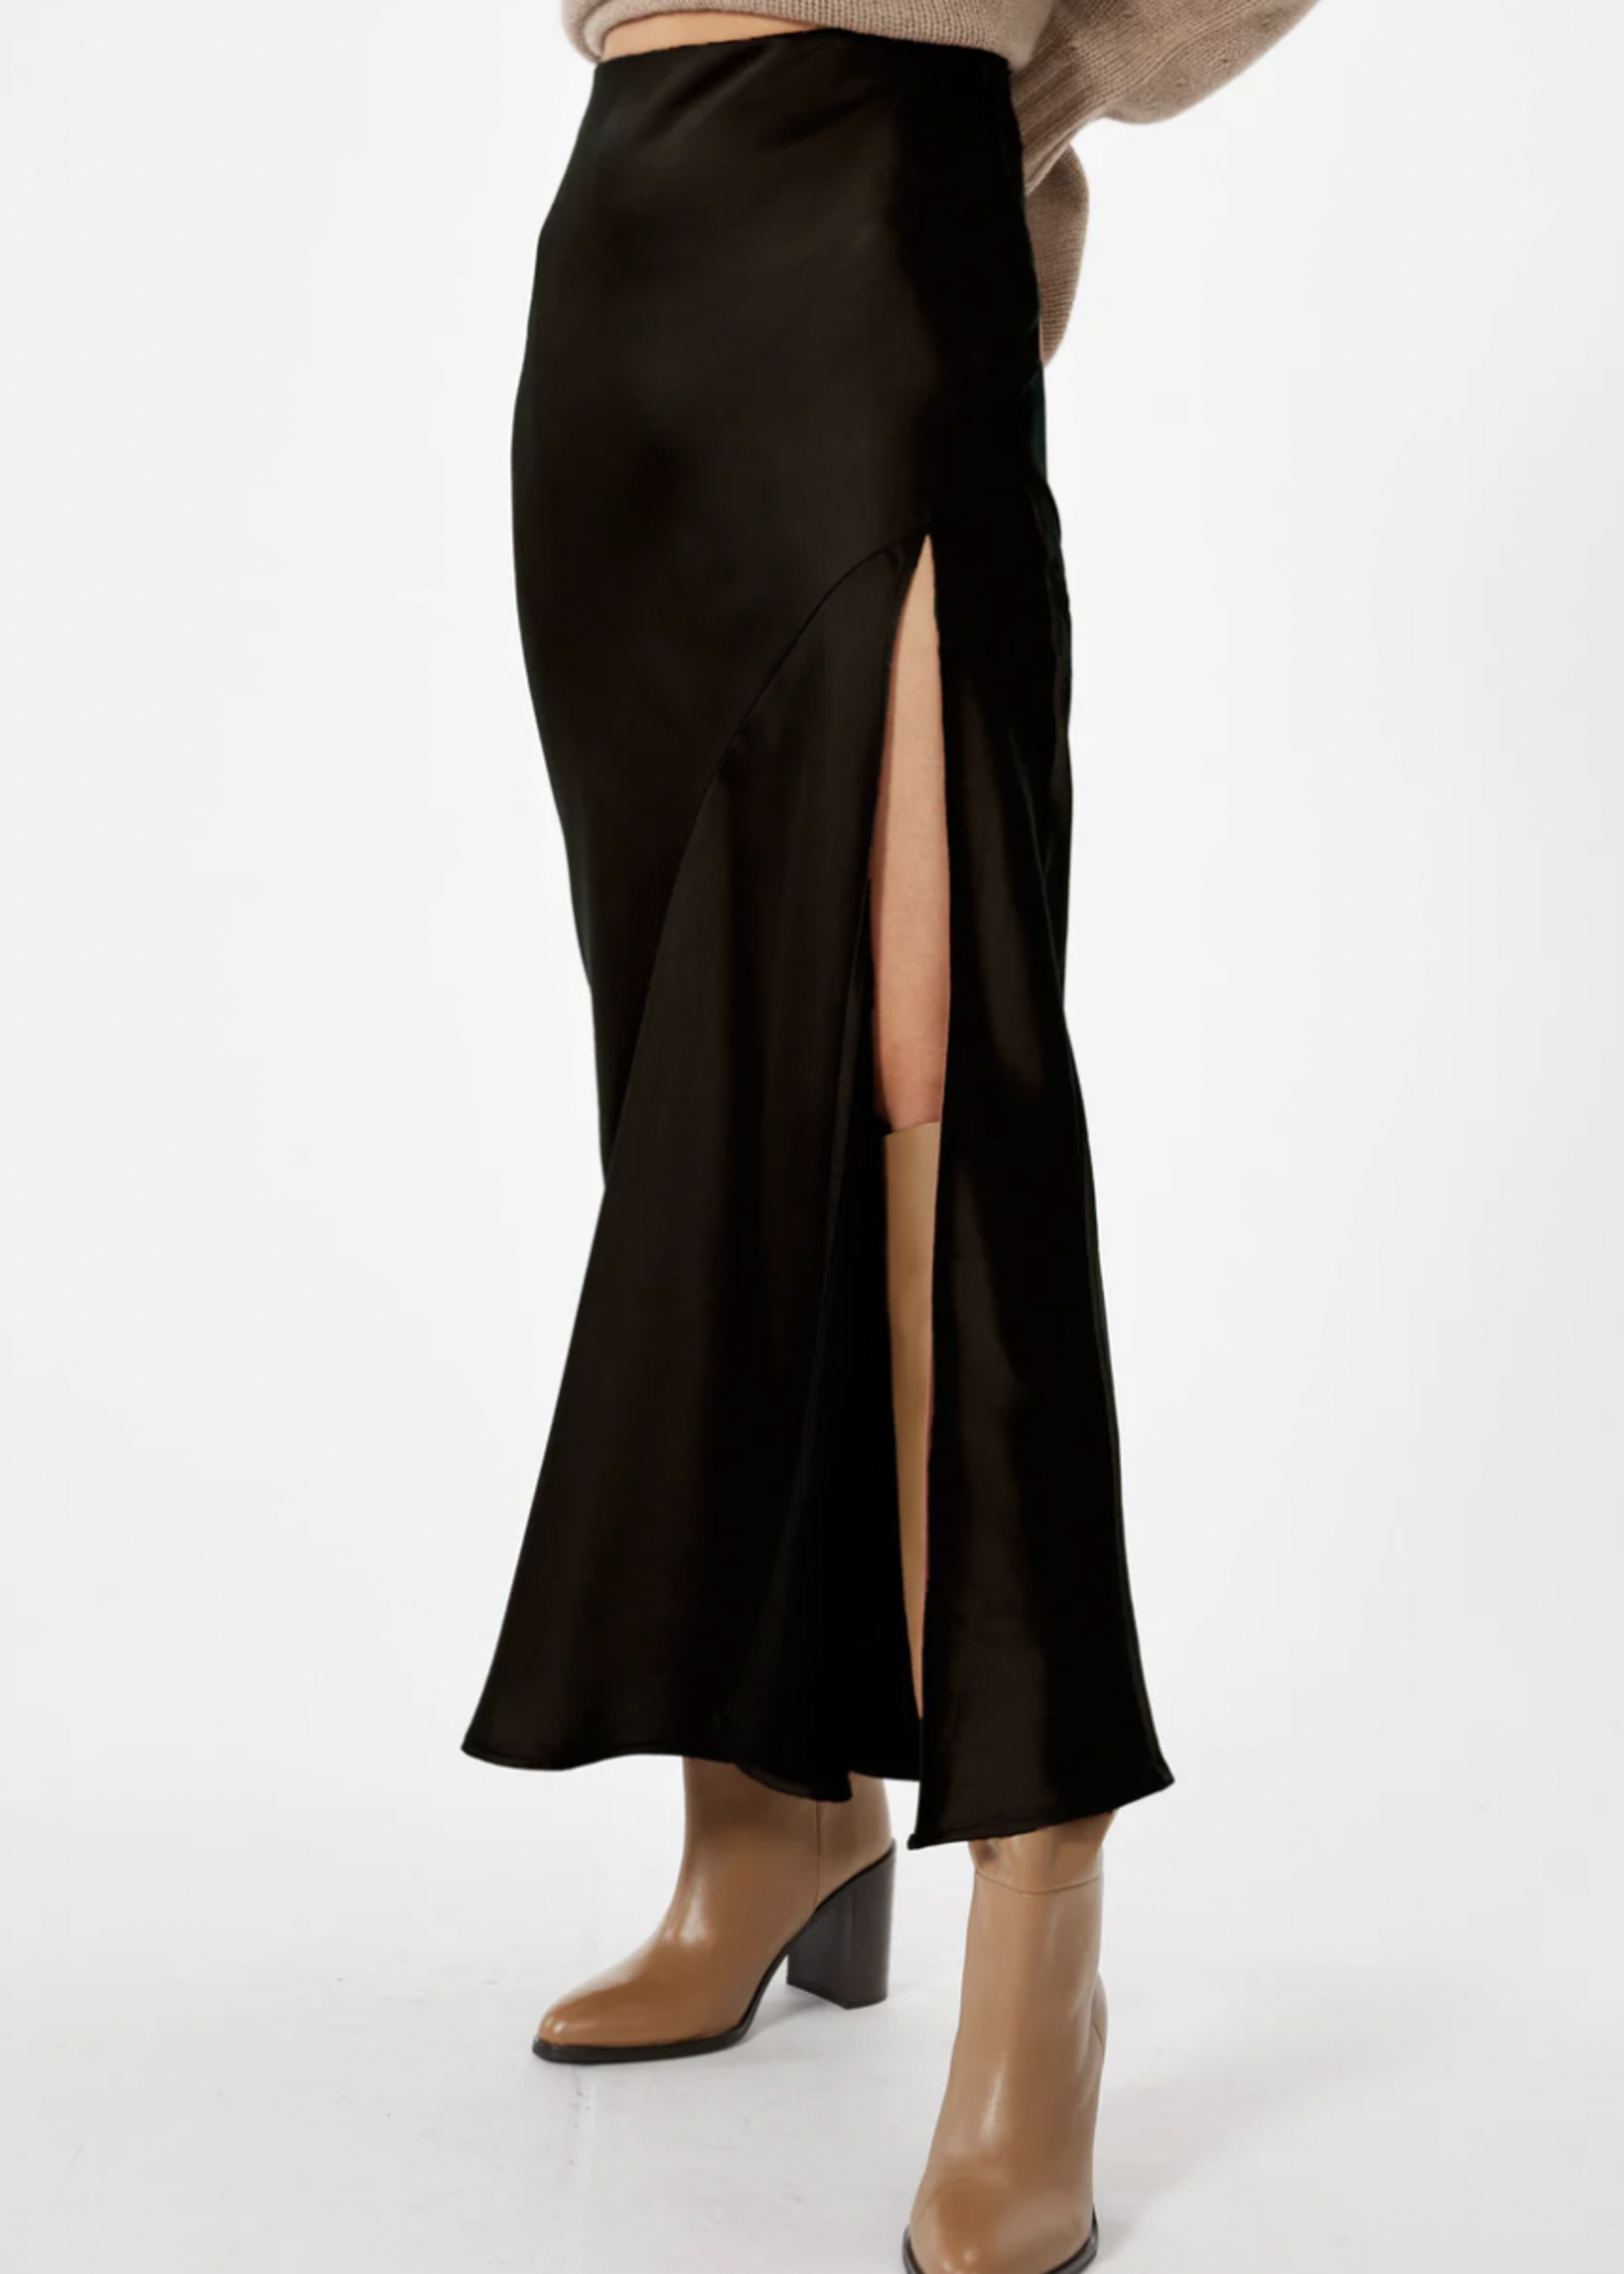 Elitaire Boutique Manhattan Skirt in Black